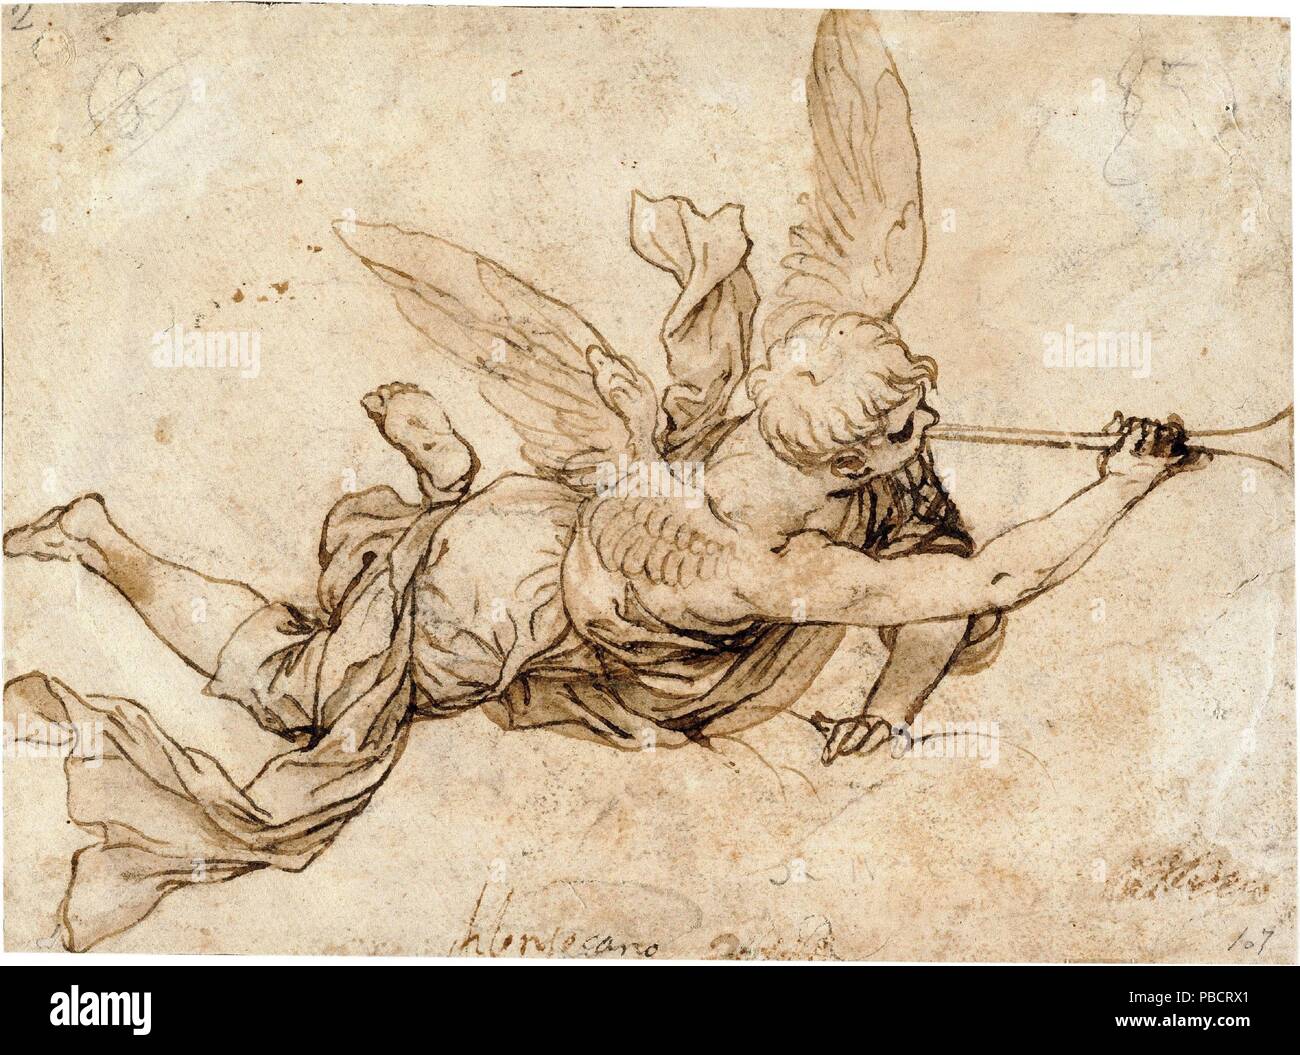 Alonso Cano/' Engel mit der Posaune des Jüngsten Gerichts". 1660 - 1667. Waschen gelb, Bleistift auf Bütten. Museum: Museo del Prado, Madrid, España. Stockfoto